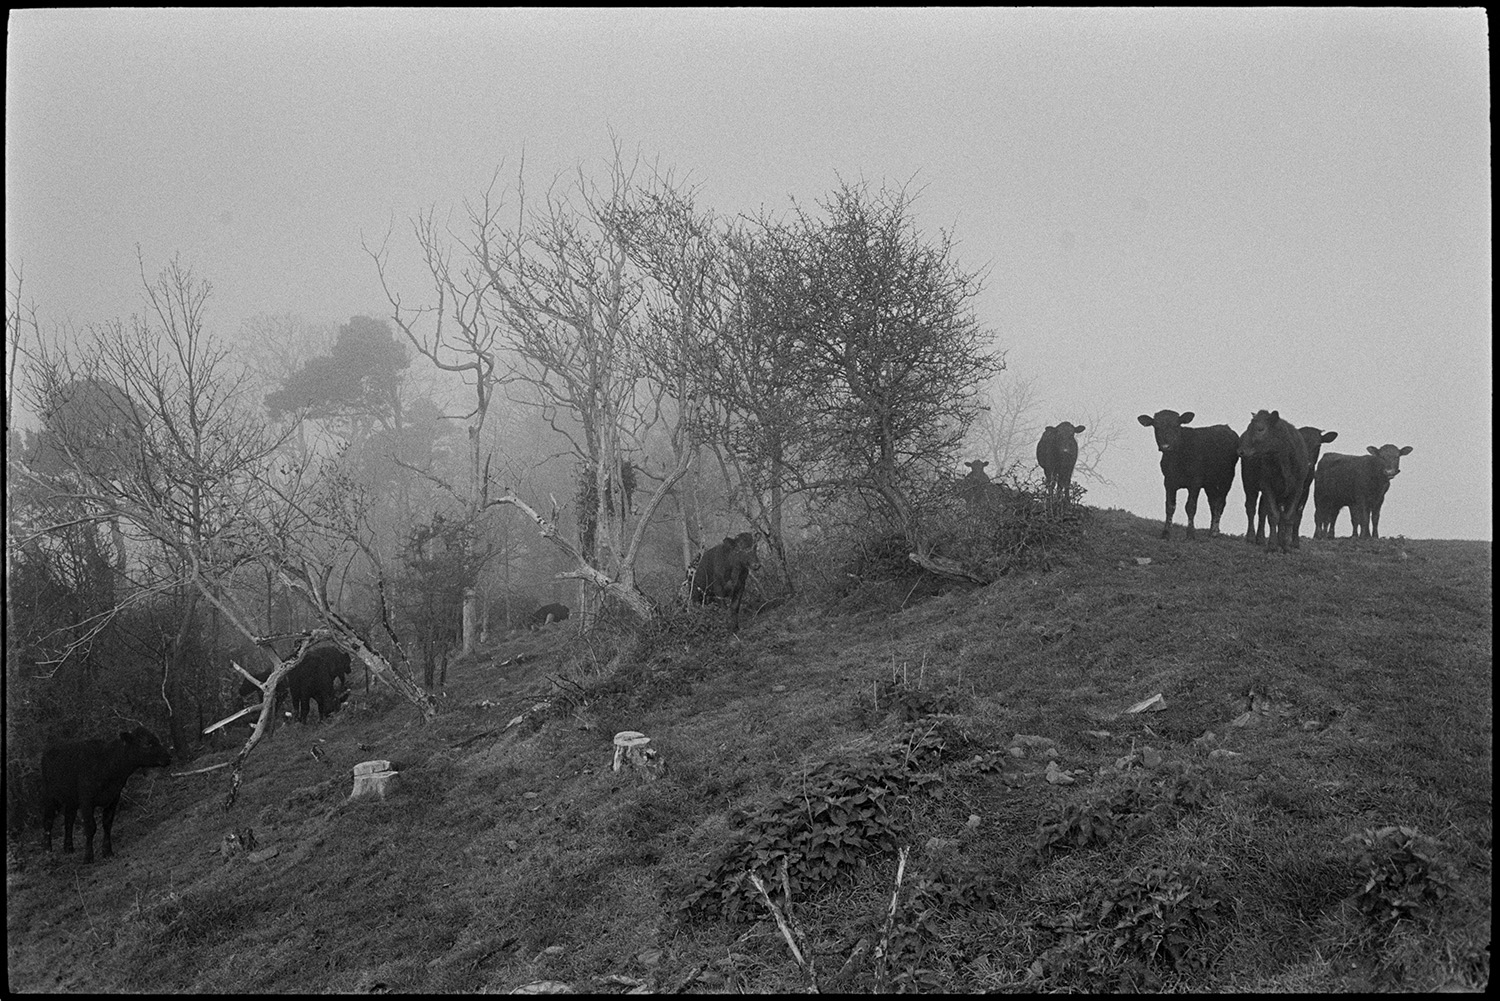 Cattle in mist. <br />
[Cattle grazing amongst trees in a misty field on a hillside at Tennacott, Bideford.]